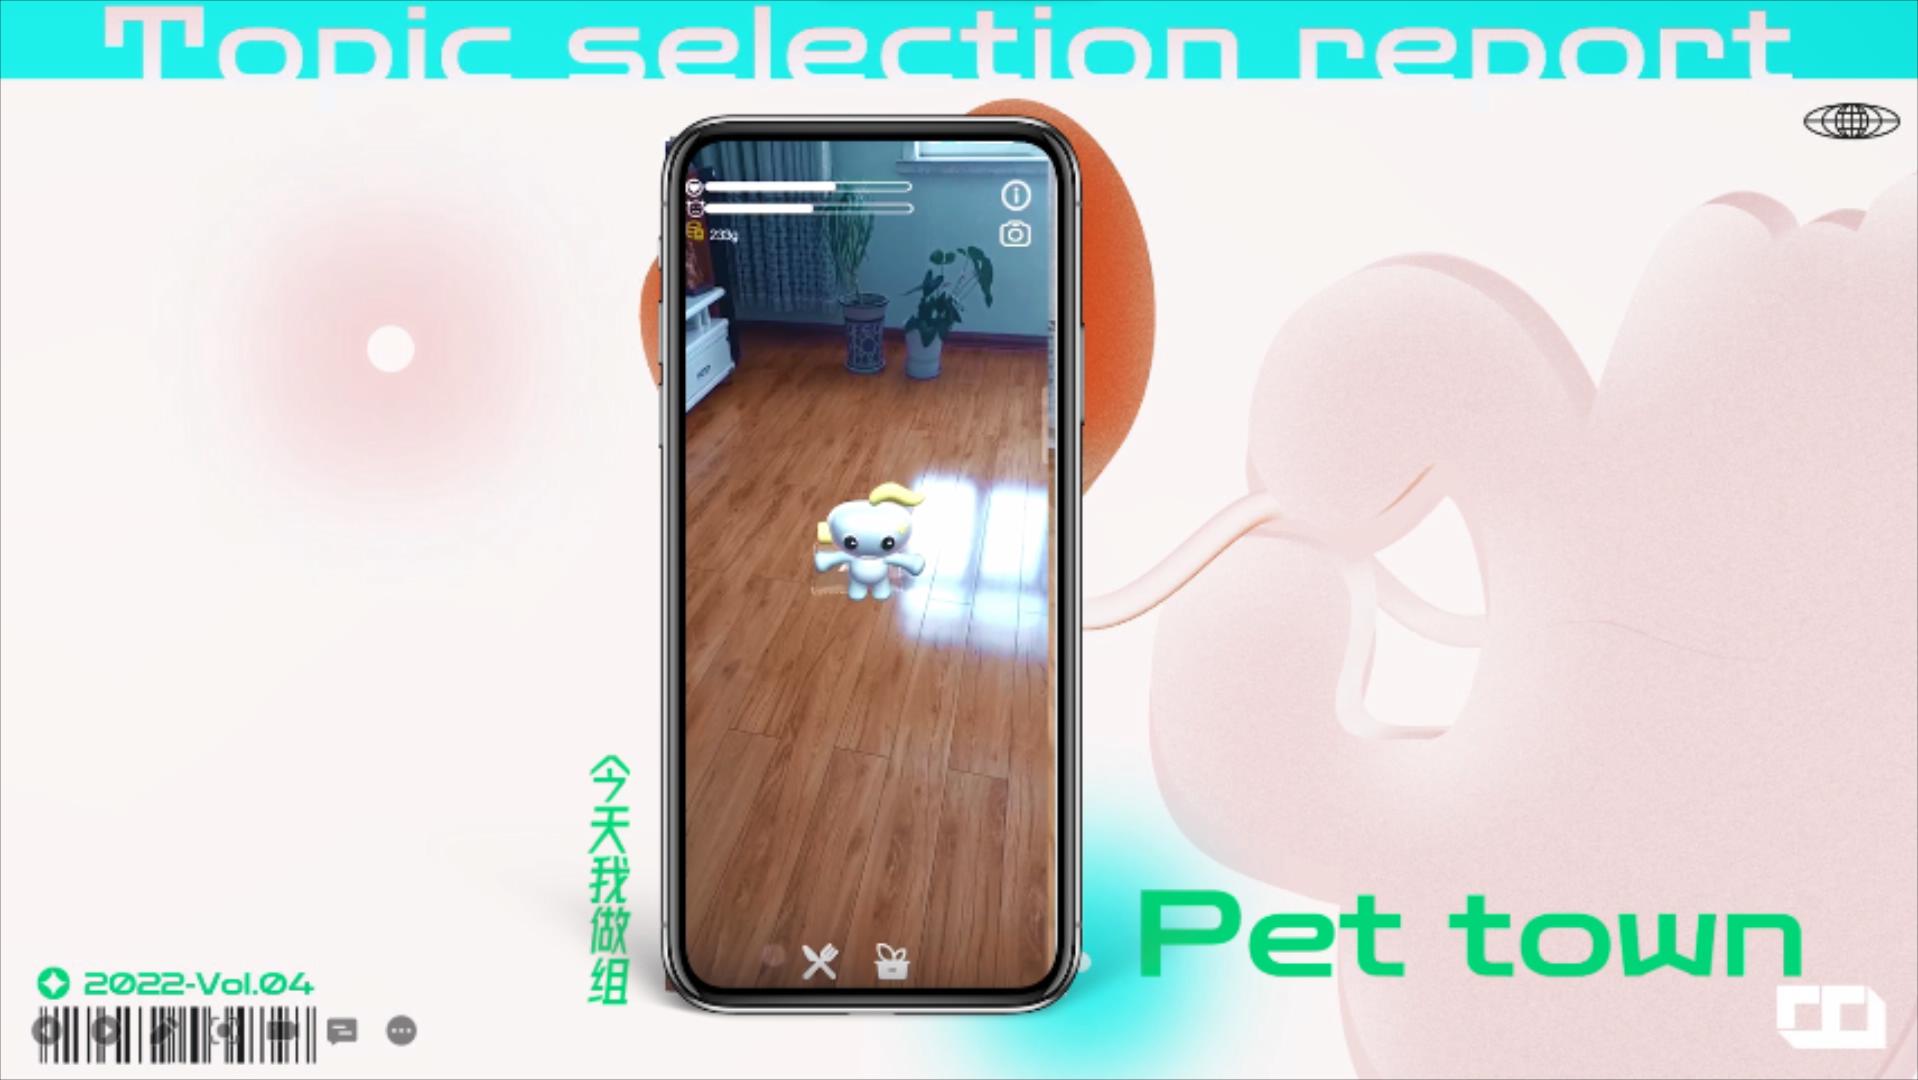 虚拟现实与游戏竞赛作品——《Pet town》增强现实电子宠物应用